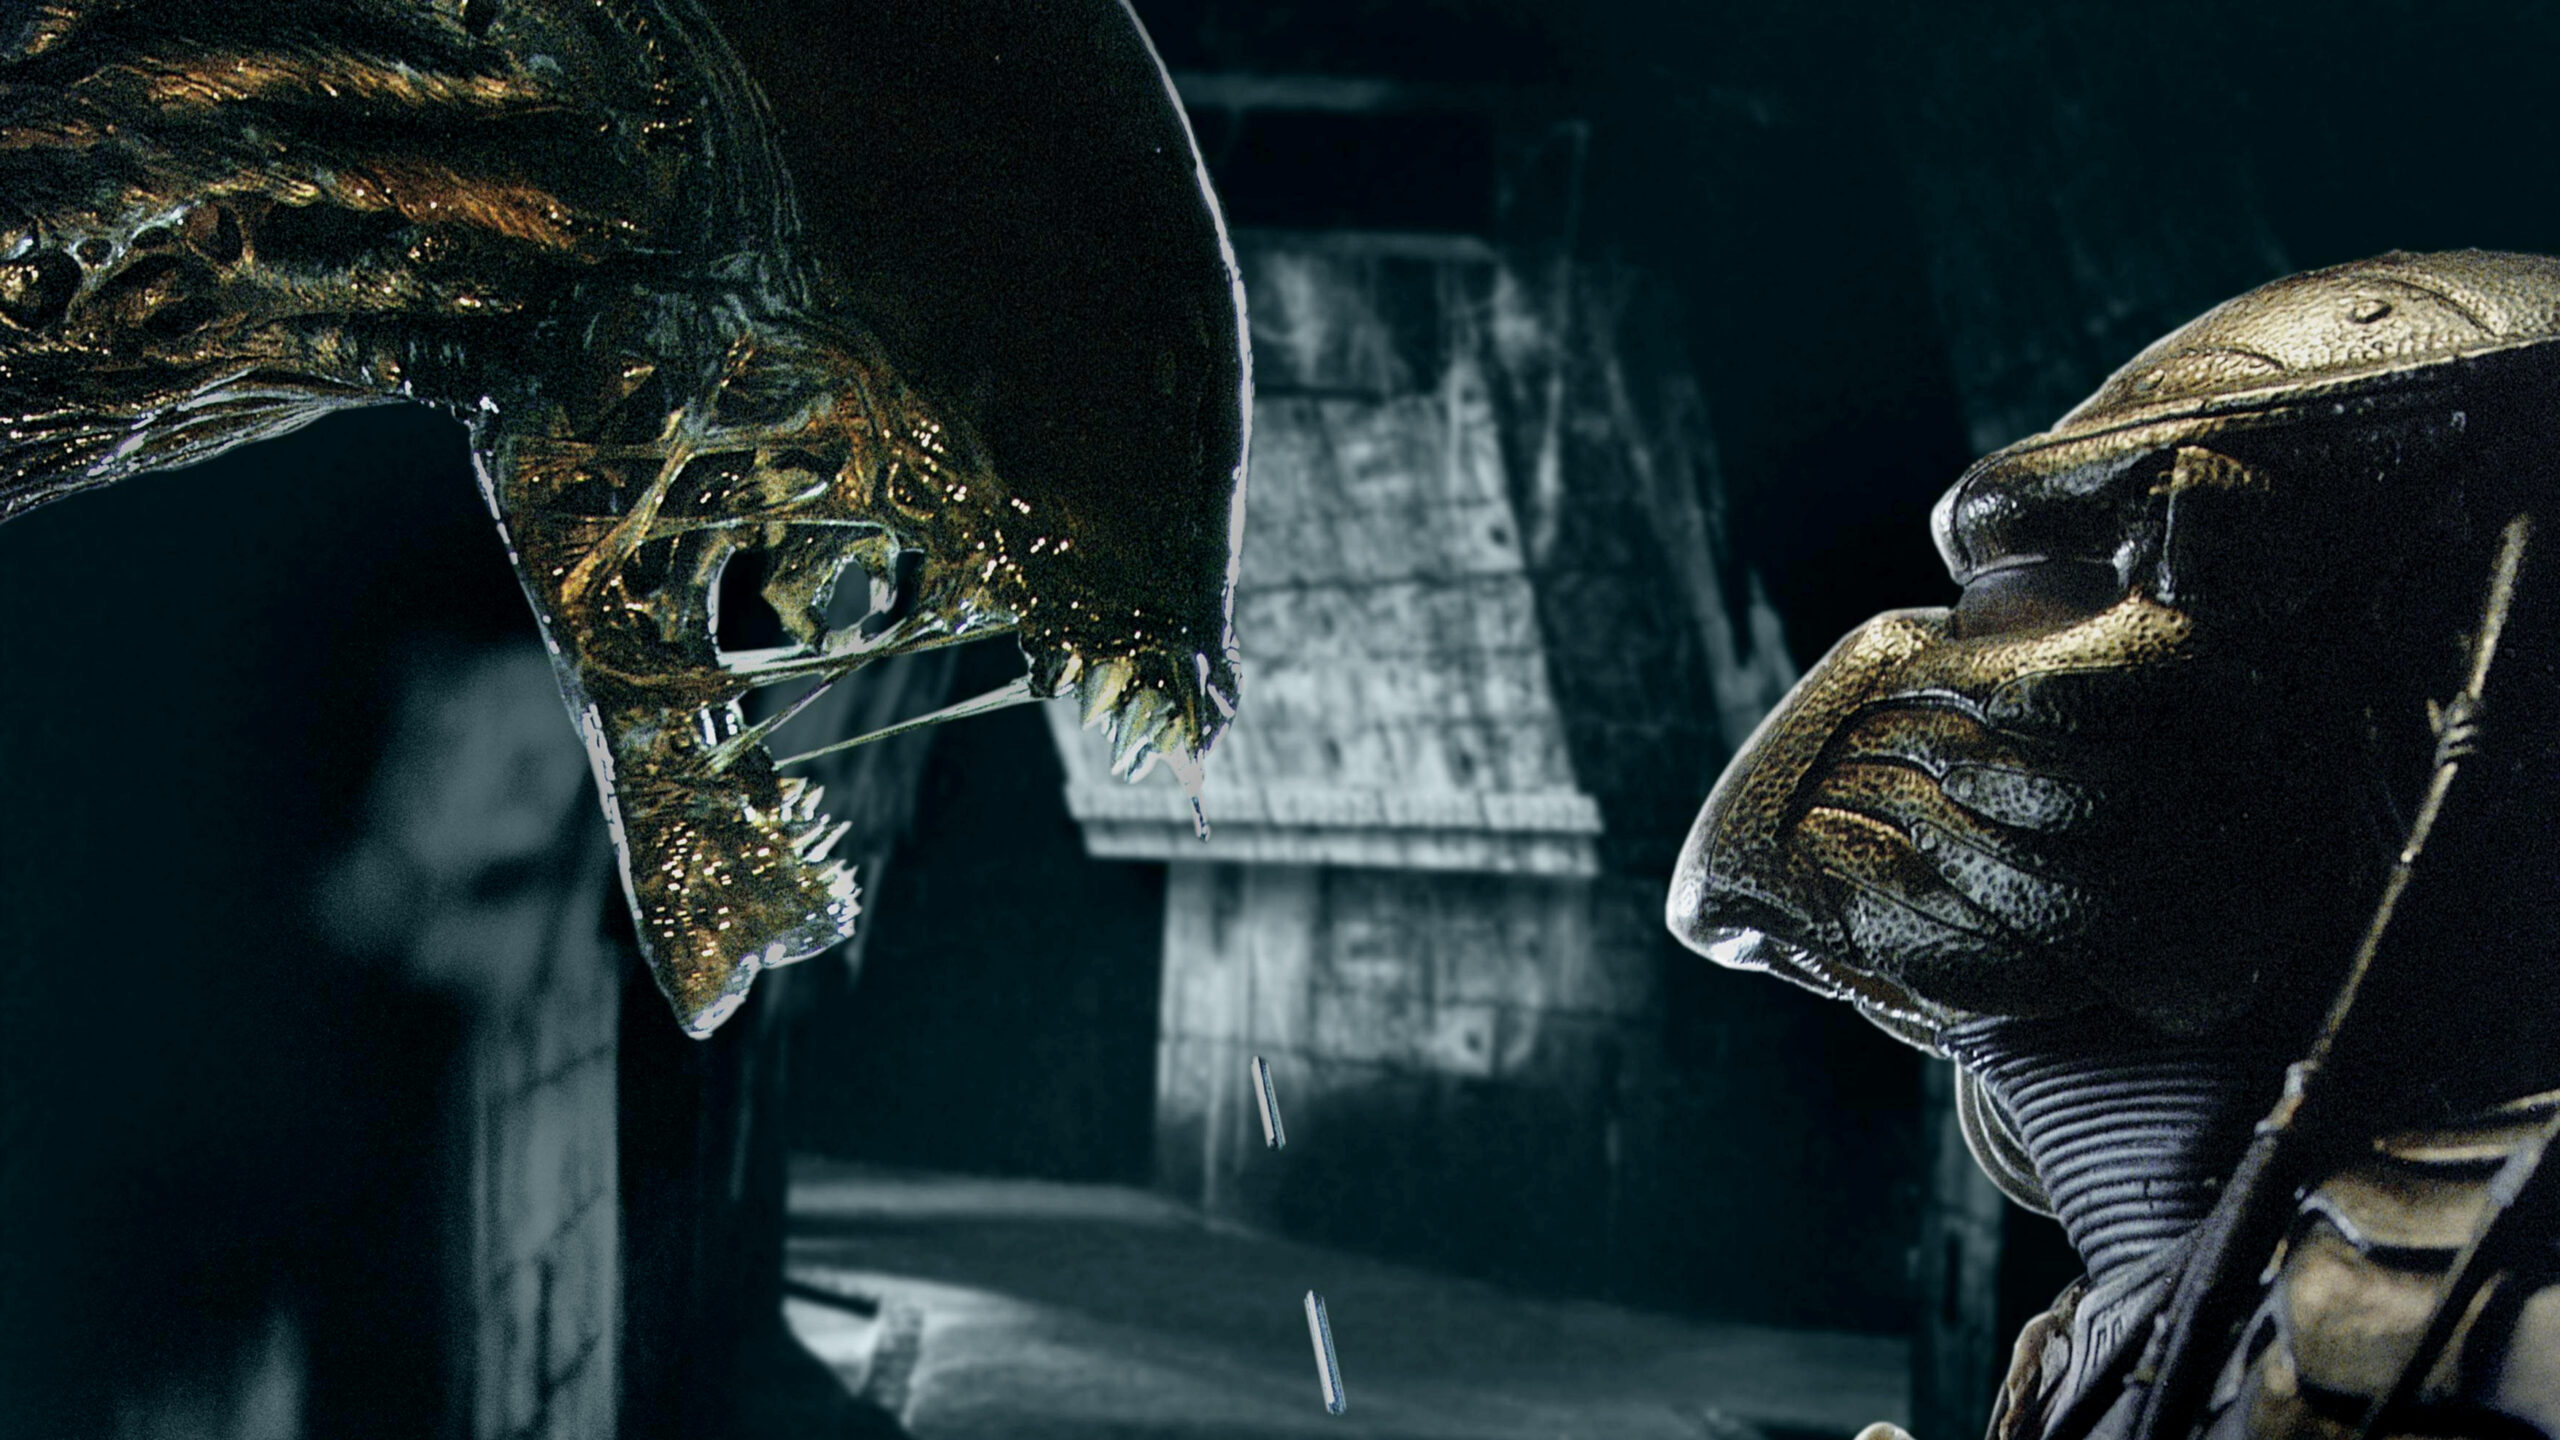 alien vs predator movie